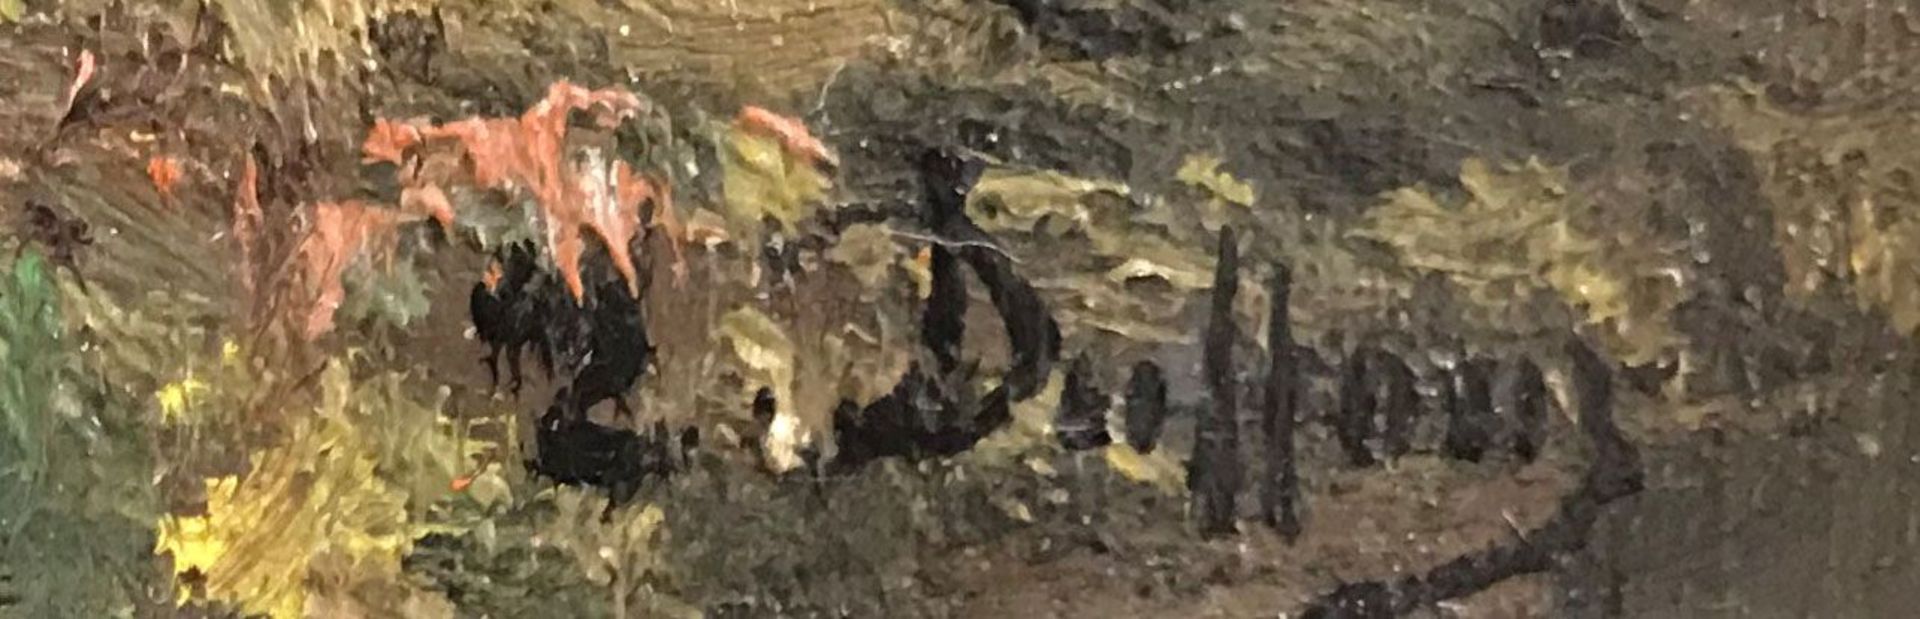 Paar Sommer-Landschaften mit Staffagefiguren, signiert E. Duffour, Öl/Holz 22 x 15,5 cm - Bild 4 aus 5